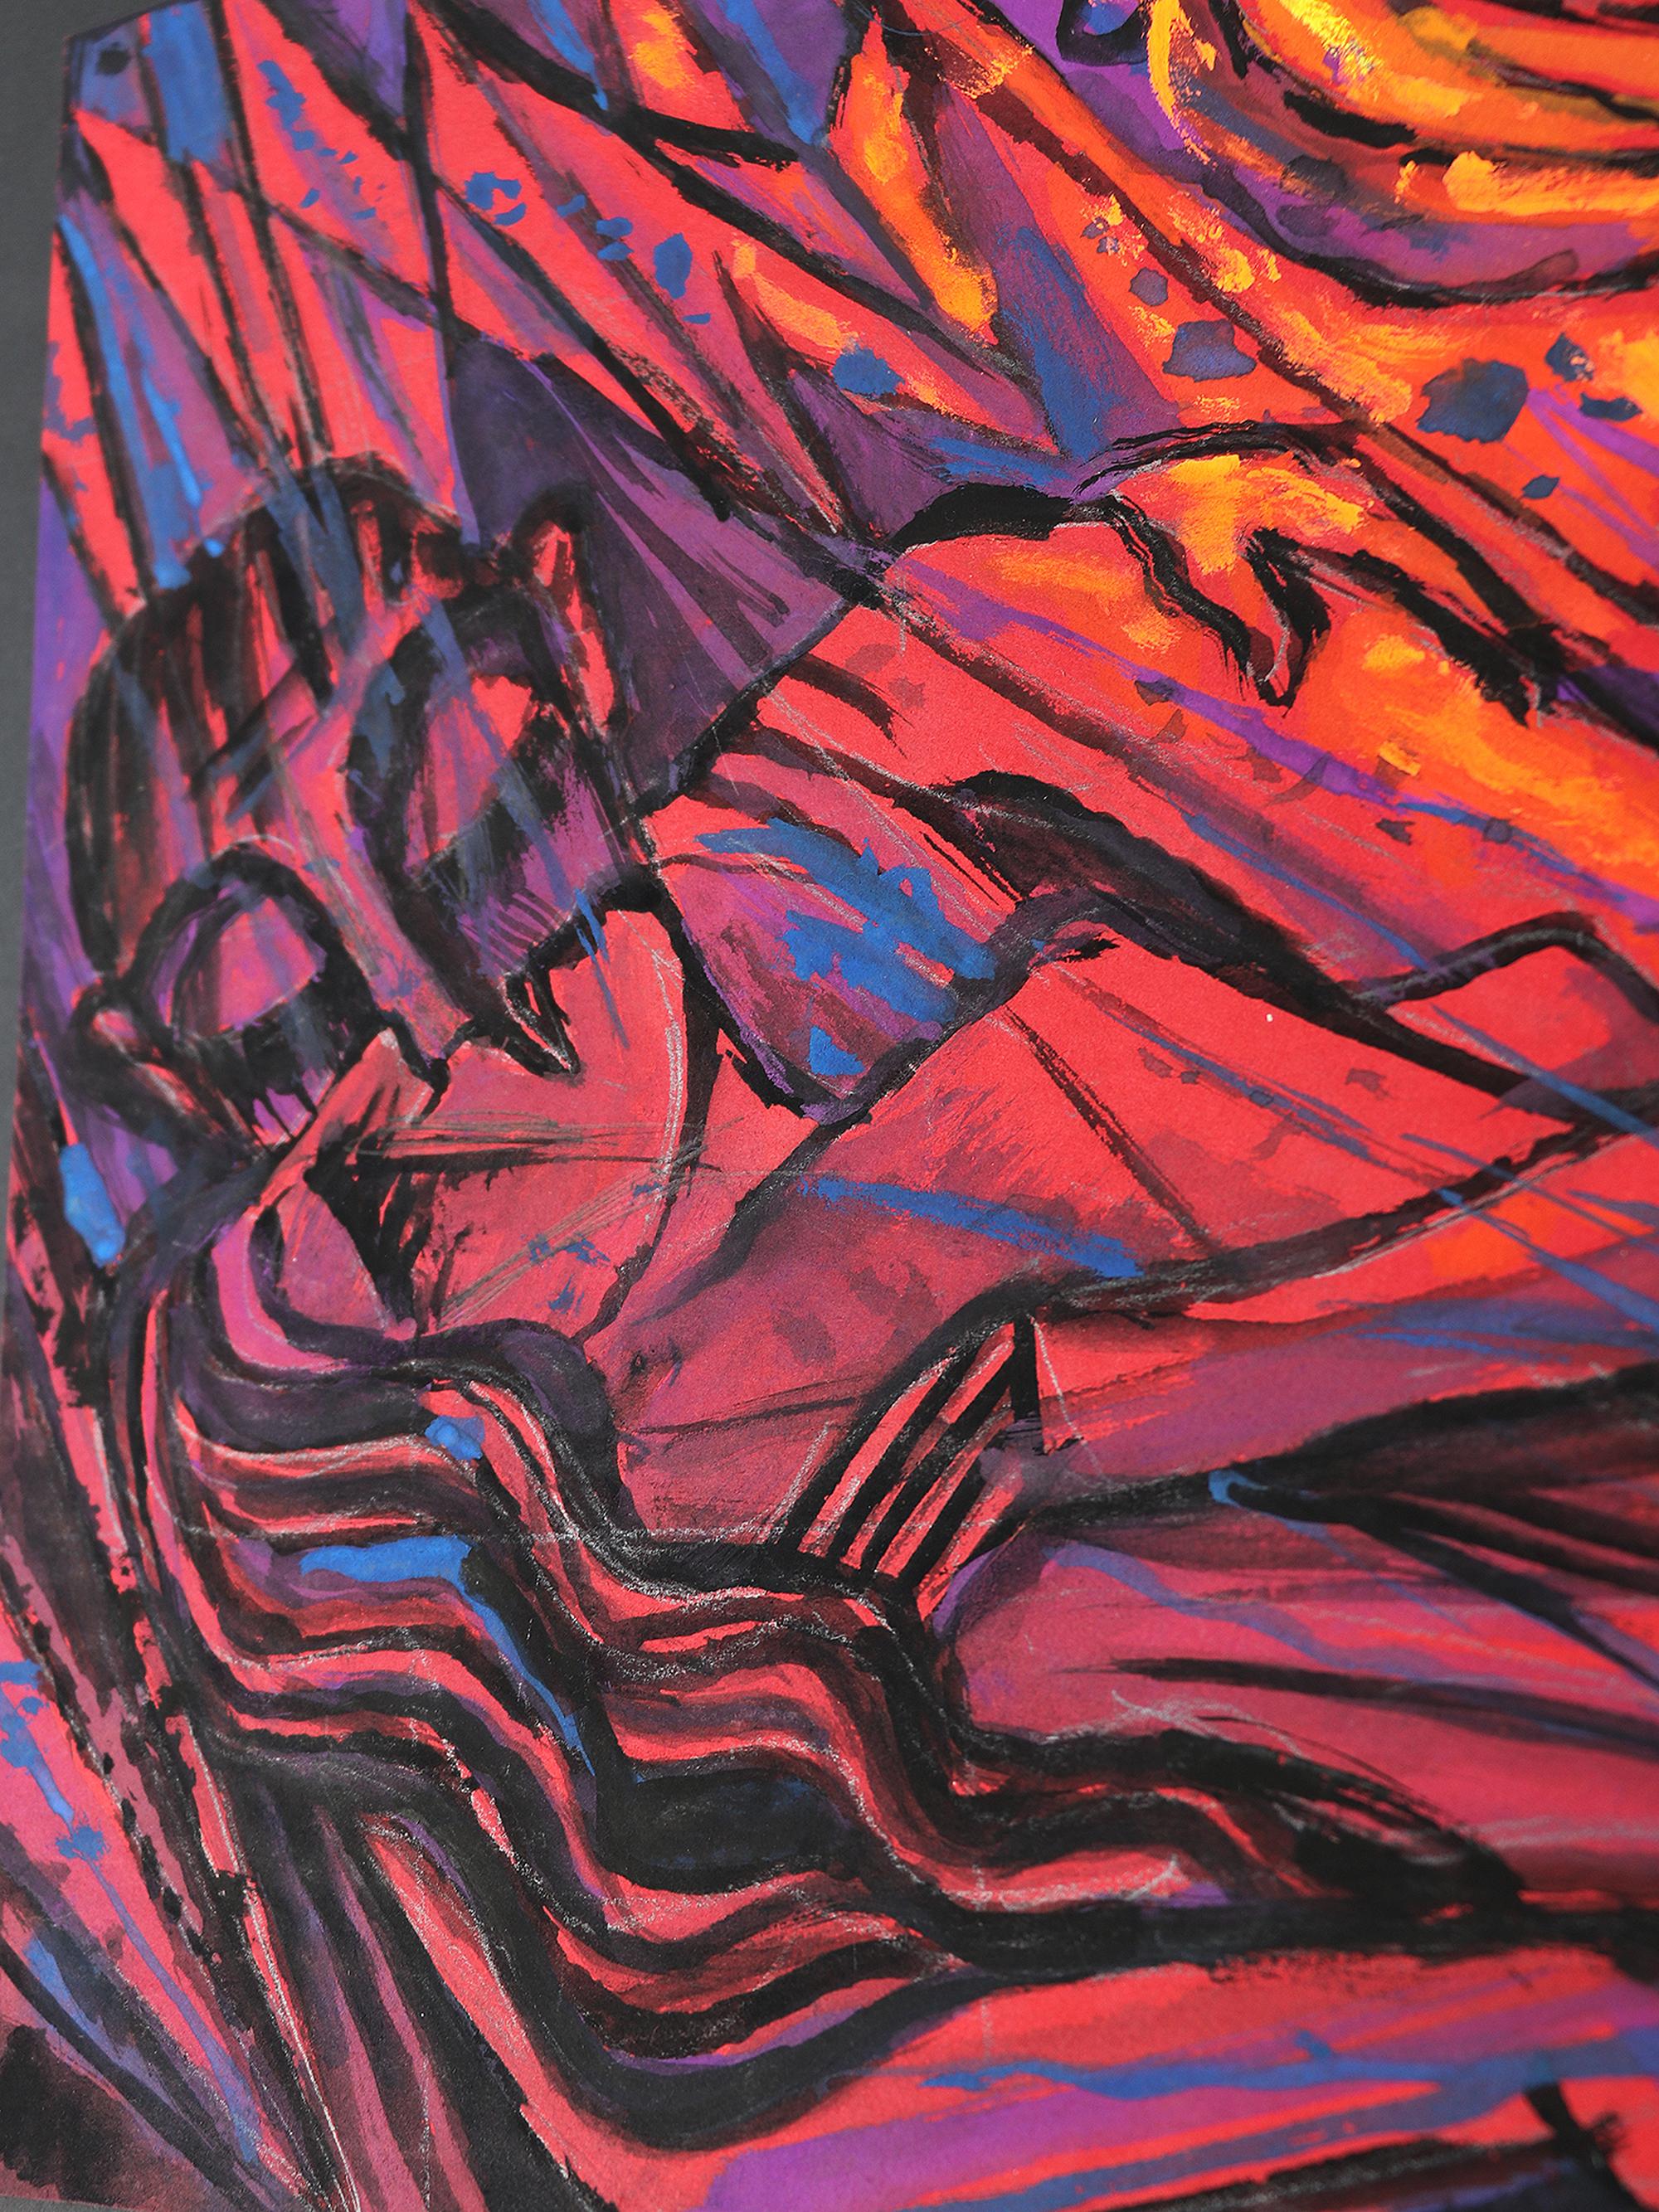 Emil Betzler
Peinture expressionniste allemande à la détrempe sur lingotin 'Couple en rouge', début des années 1960
Une pièce exceptionnelle d'art expressionniste.
Non signé, mais clairement attribuable à Emil Betzler.
Œuvre similaire présentée dans